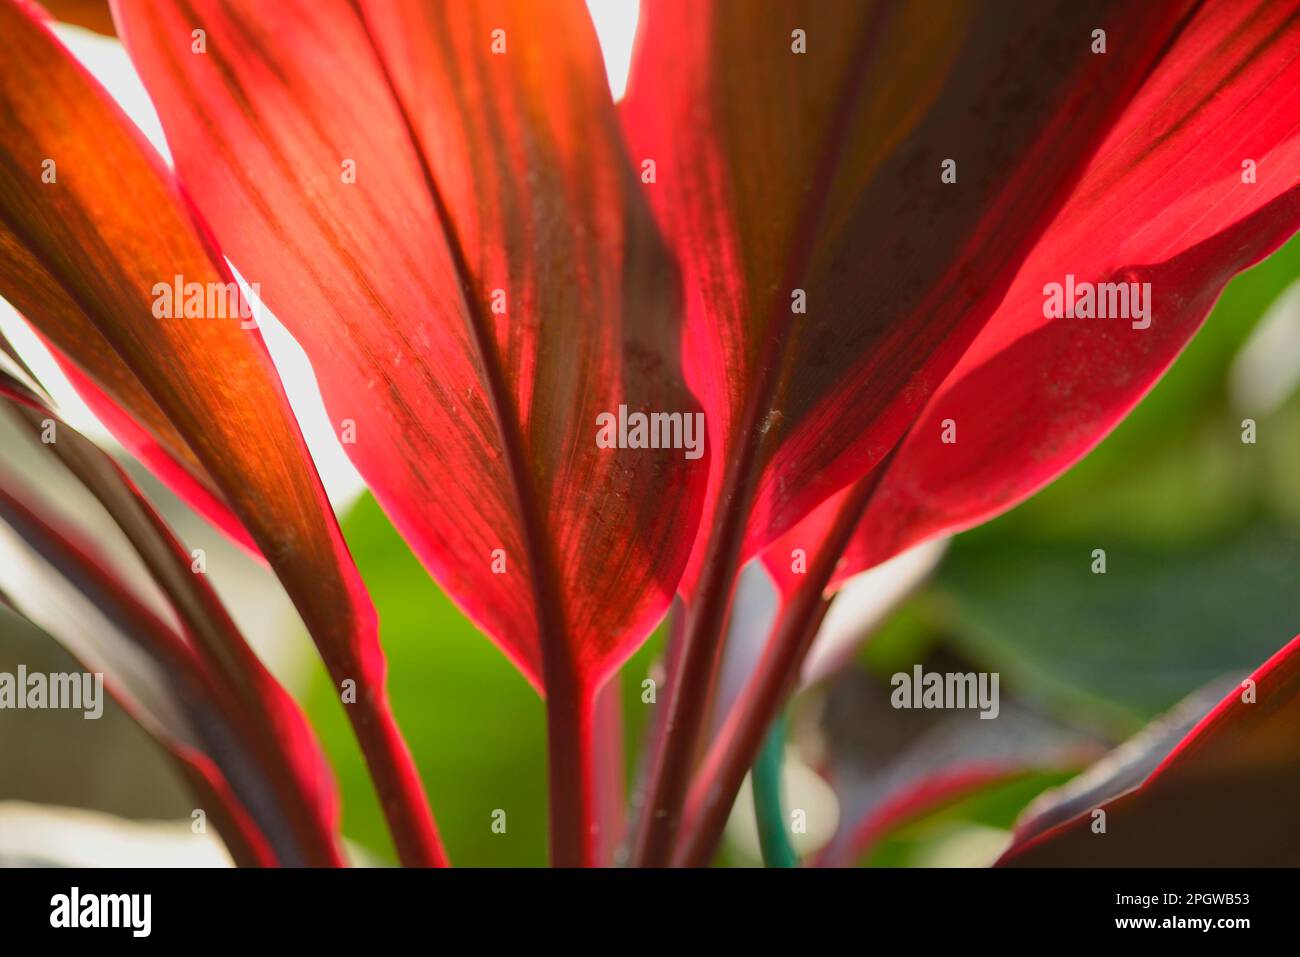 Image des feuilles rouges rétroéclairées d'une plante Ti (Cordyline fruticosa) Banque D'Images